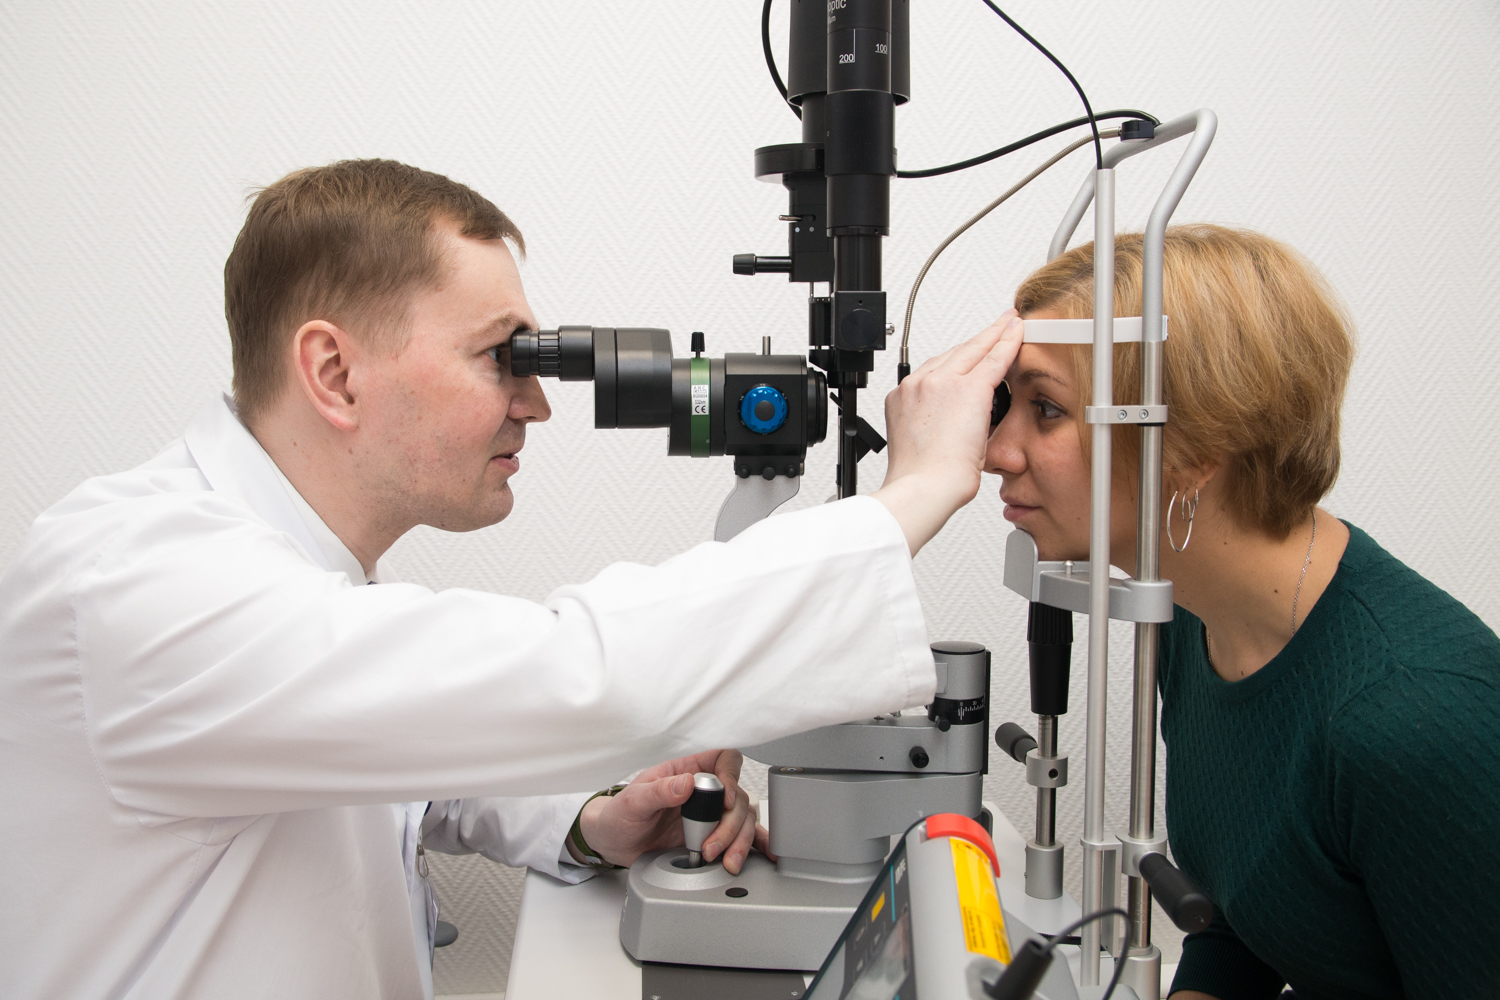 Лечение атрофии зрительного нерва стволовыми клетками в германии | booking health